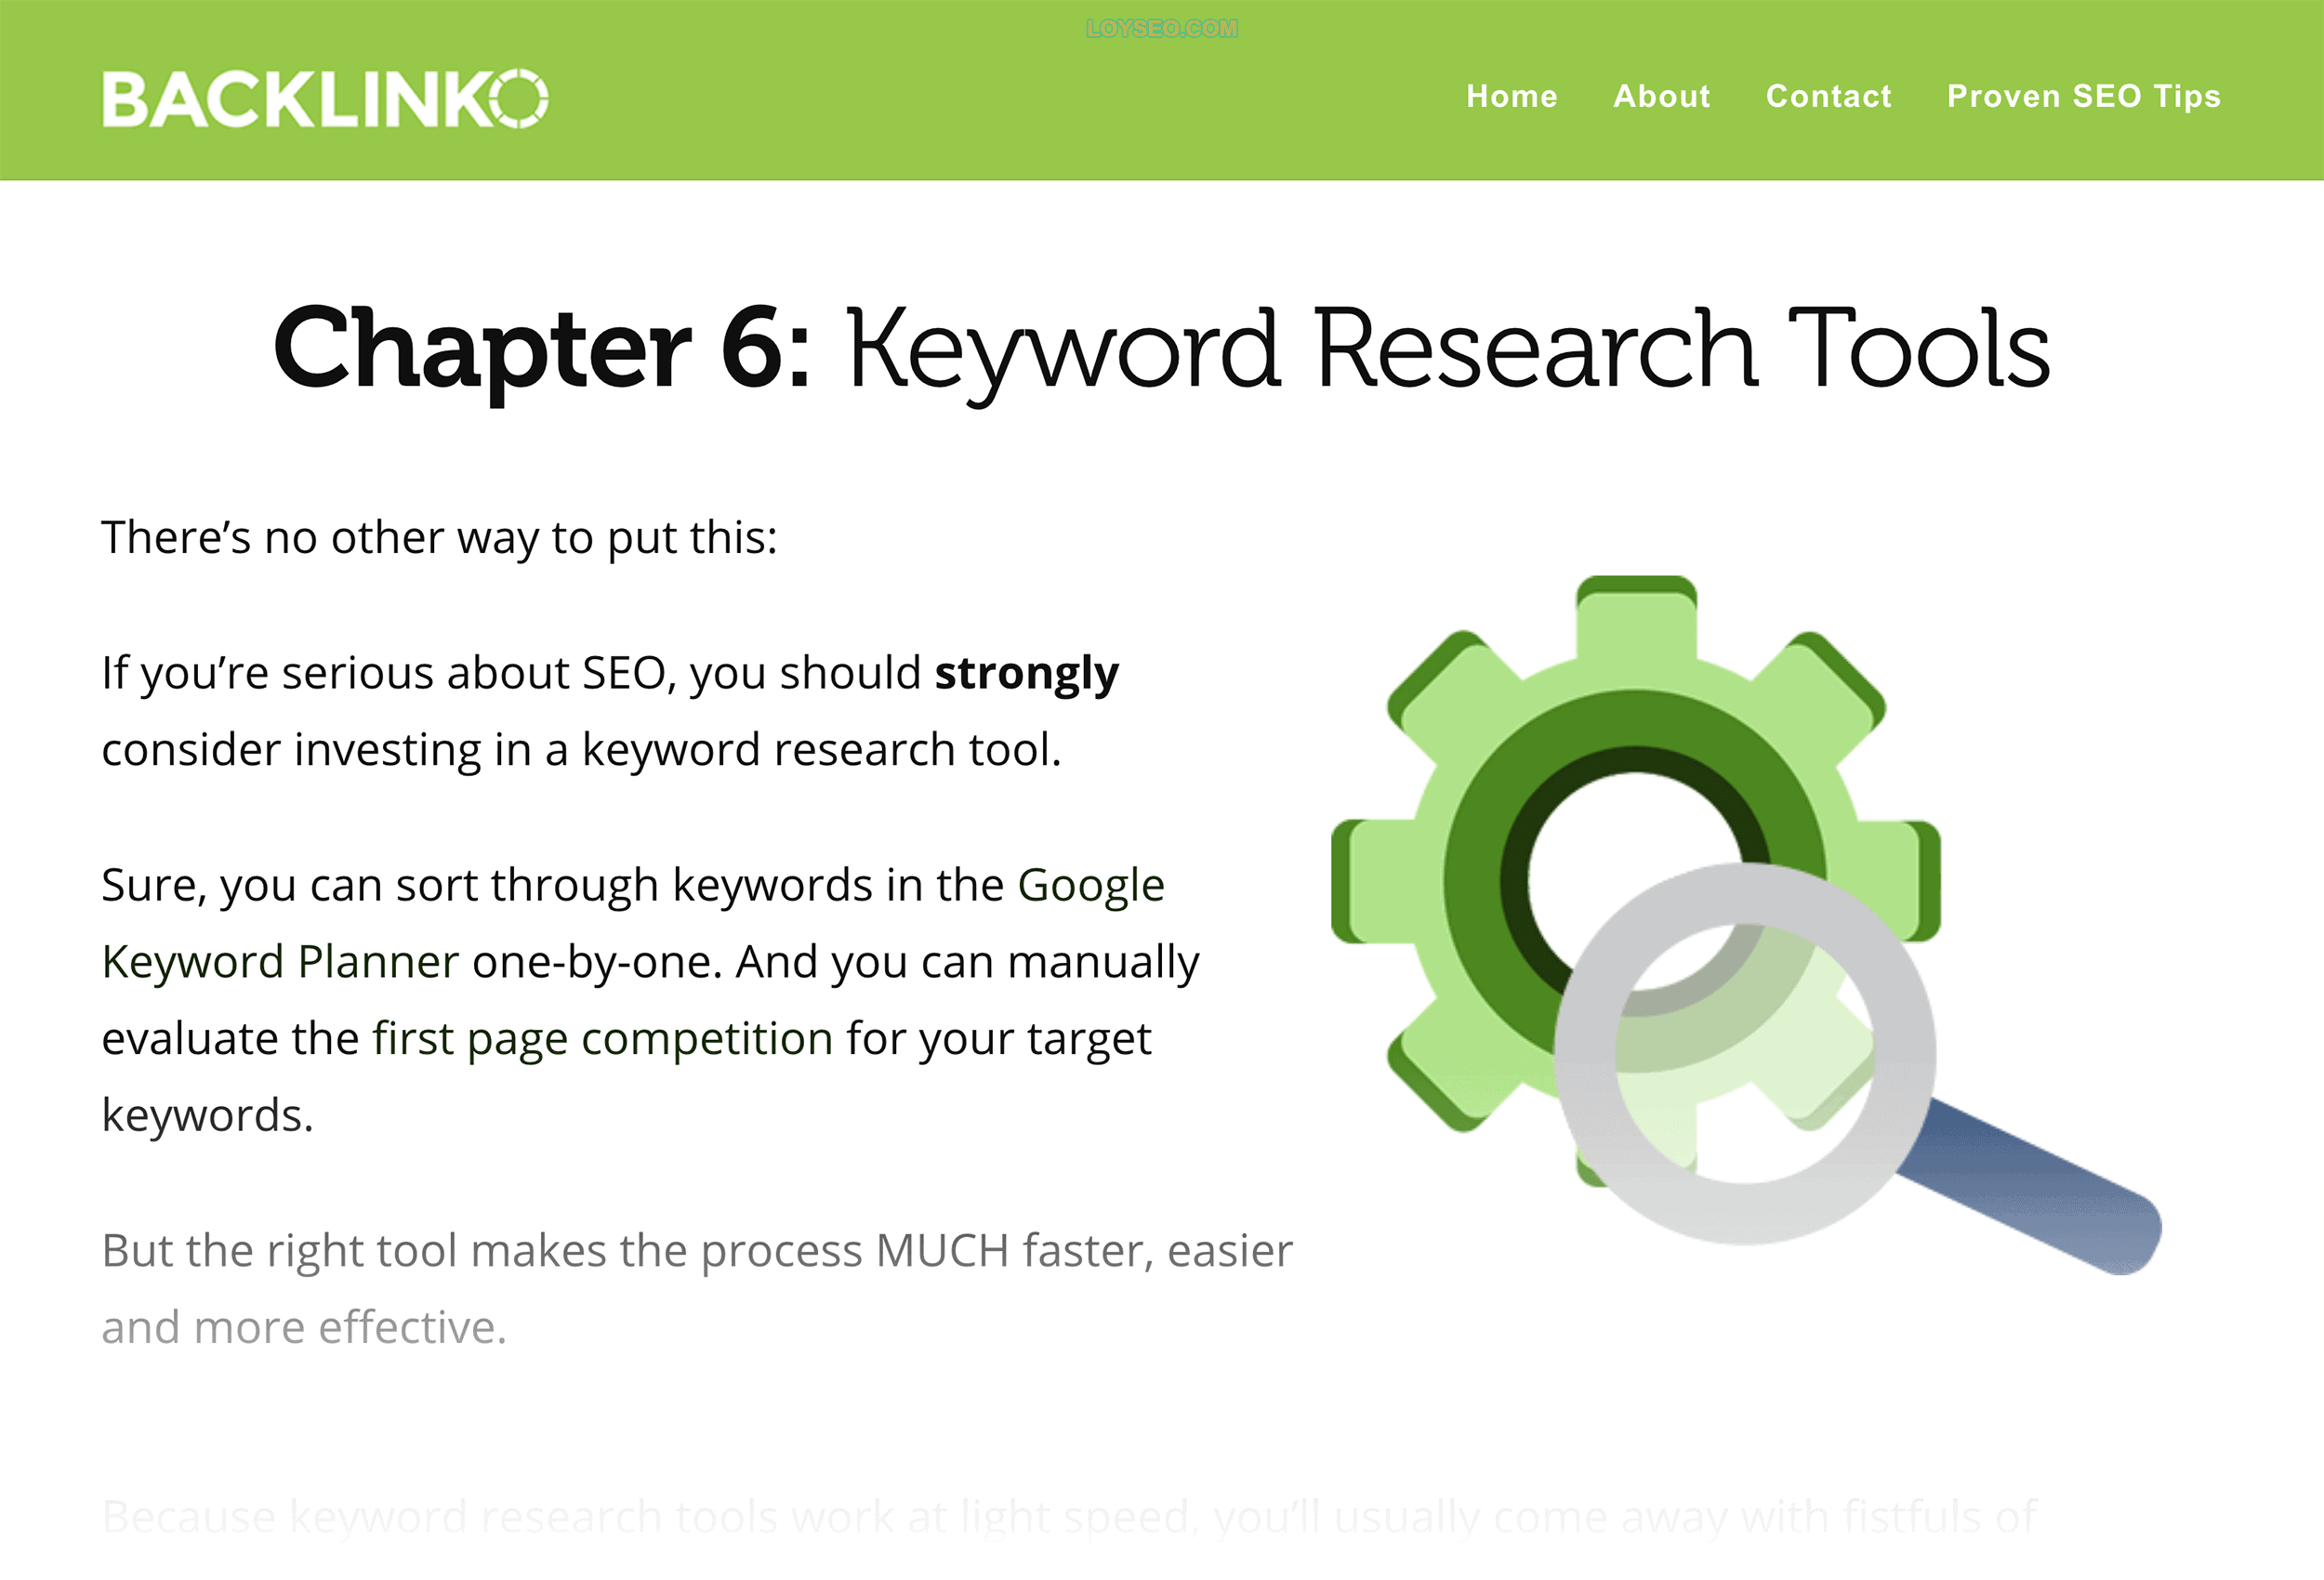 Backlinko – Chapter 6